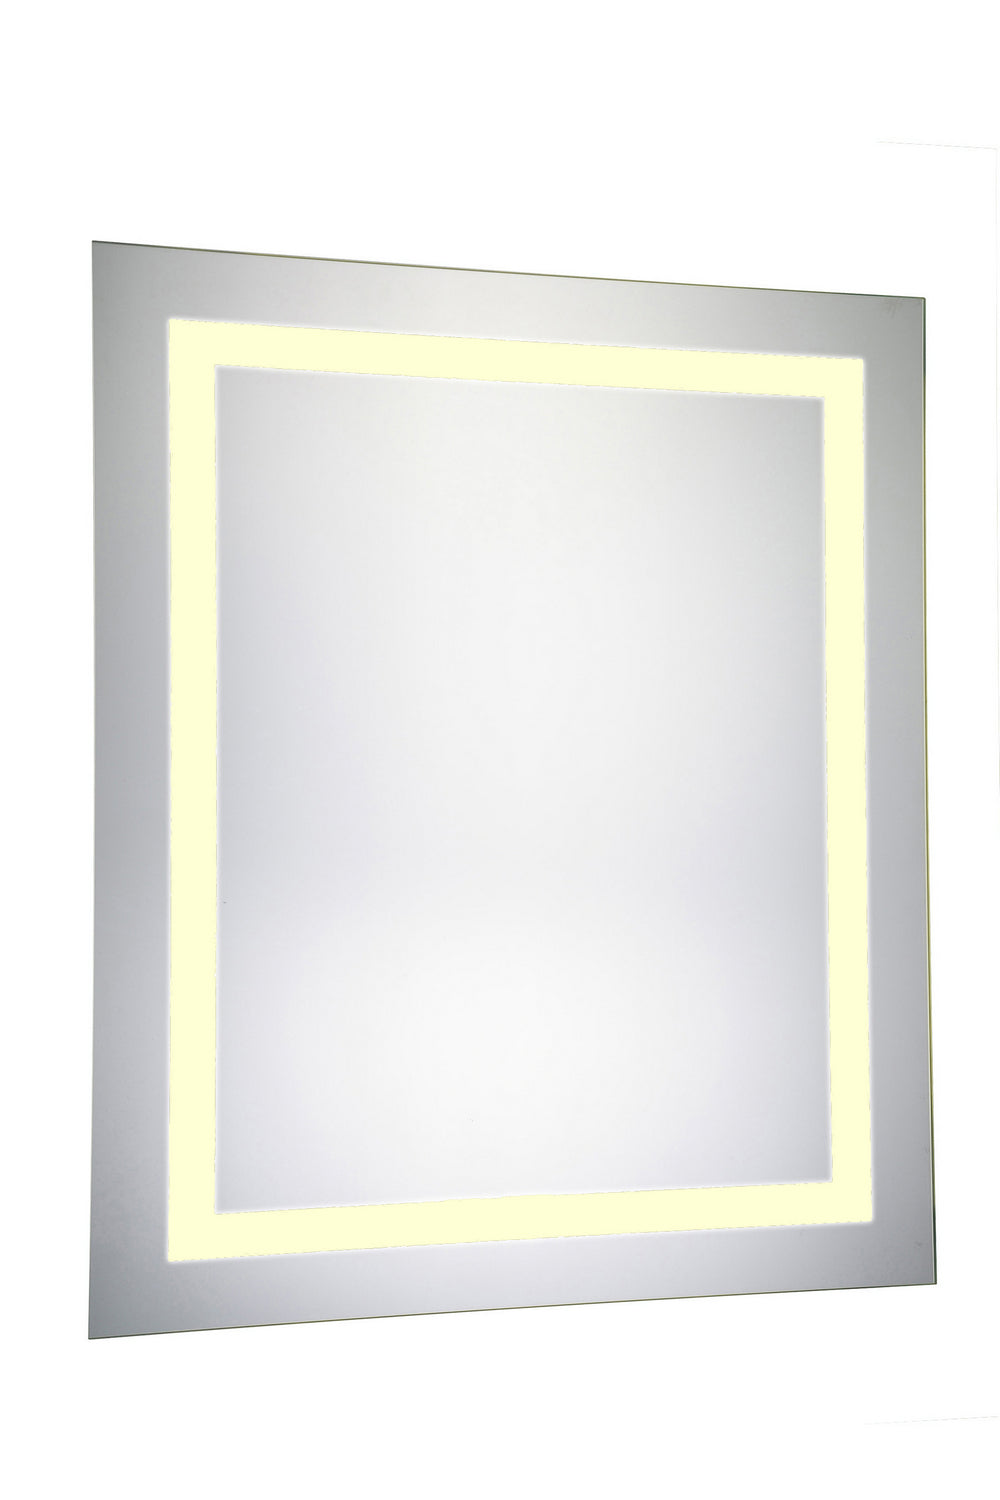 Elegant Lighting - MRE-6011 - LED Mirror - Nova - Glossy White